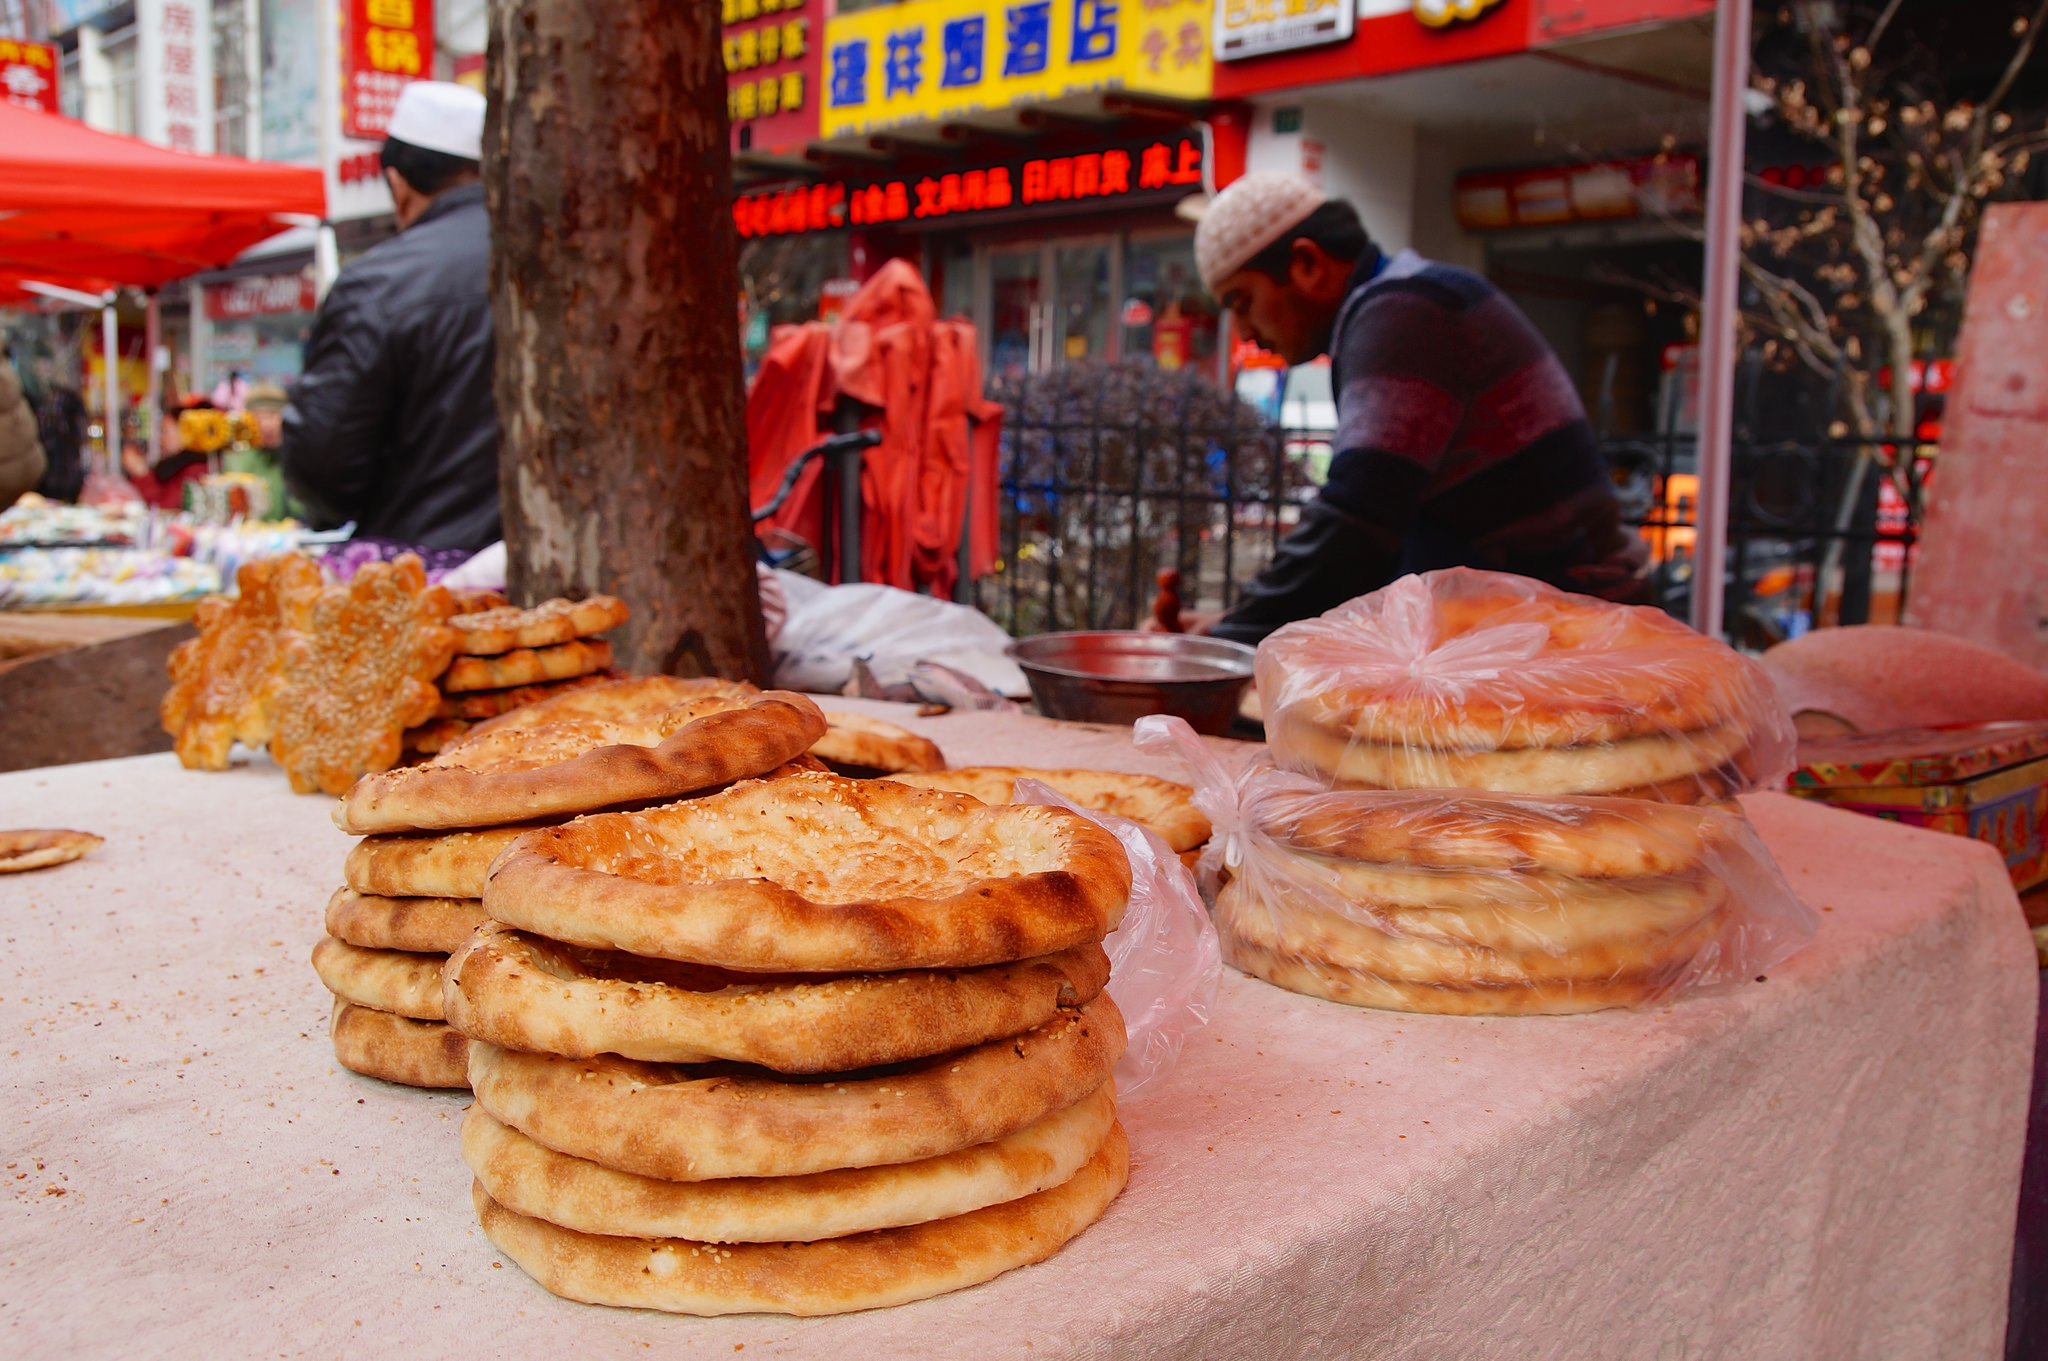 جمعه بازار مسلمانان در شانگهای چین